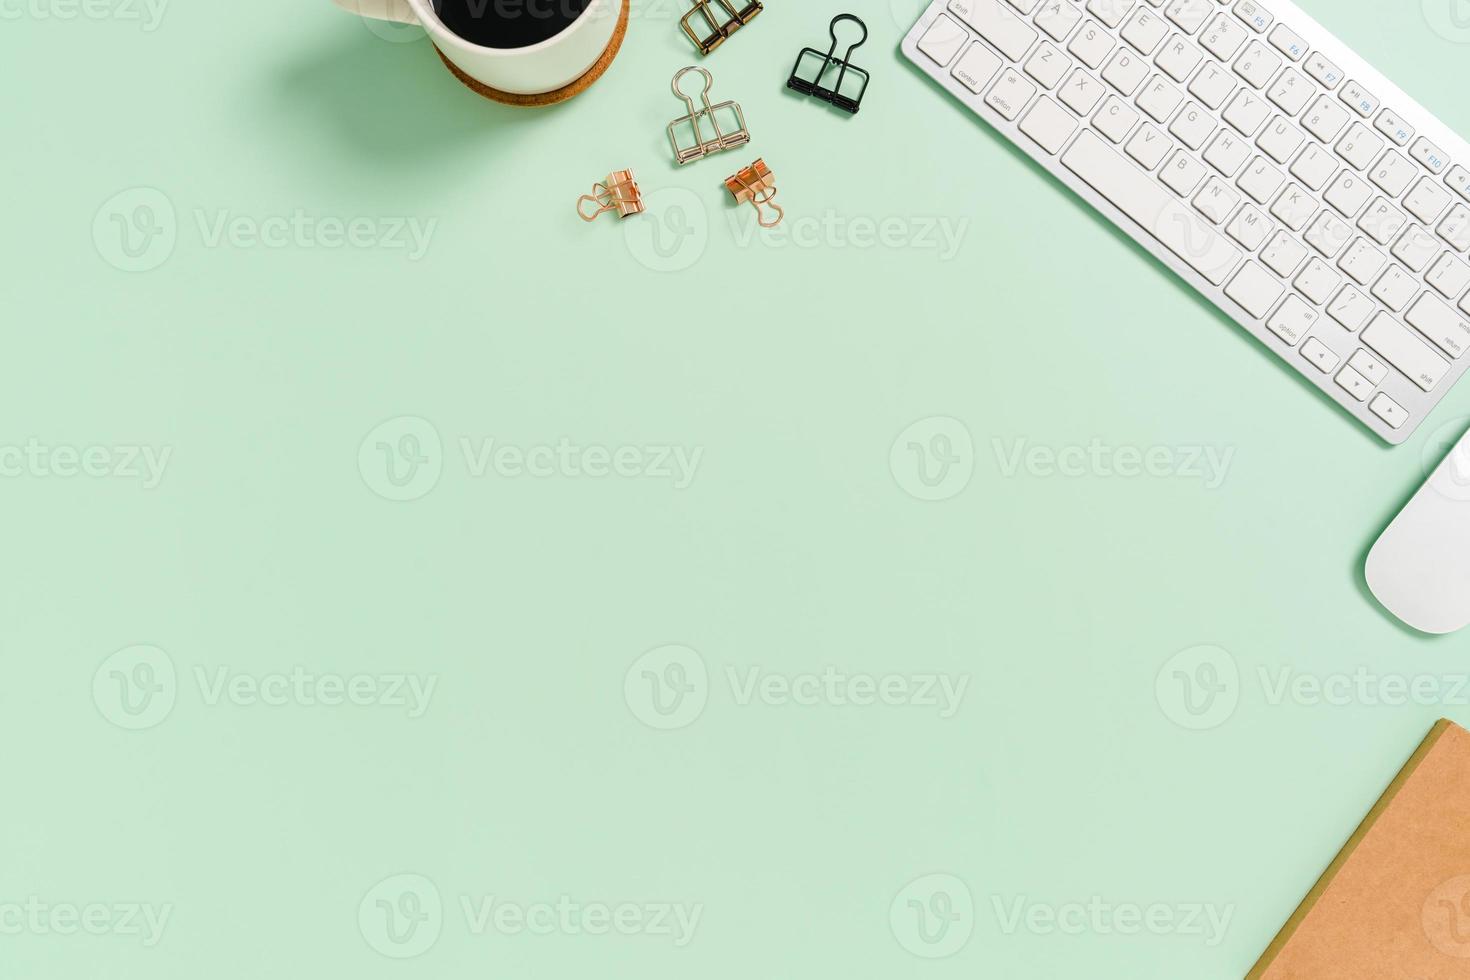 espacio de trabajo mínimo: foto creativa plana del escritorio del espacio de trabajo. Escritorio de oficina de vista superior con teclado y mouse sobre fondo de color verde pastel. vista superior con espacio de copia, fotografía plana.